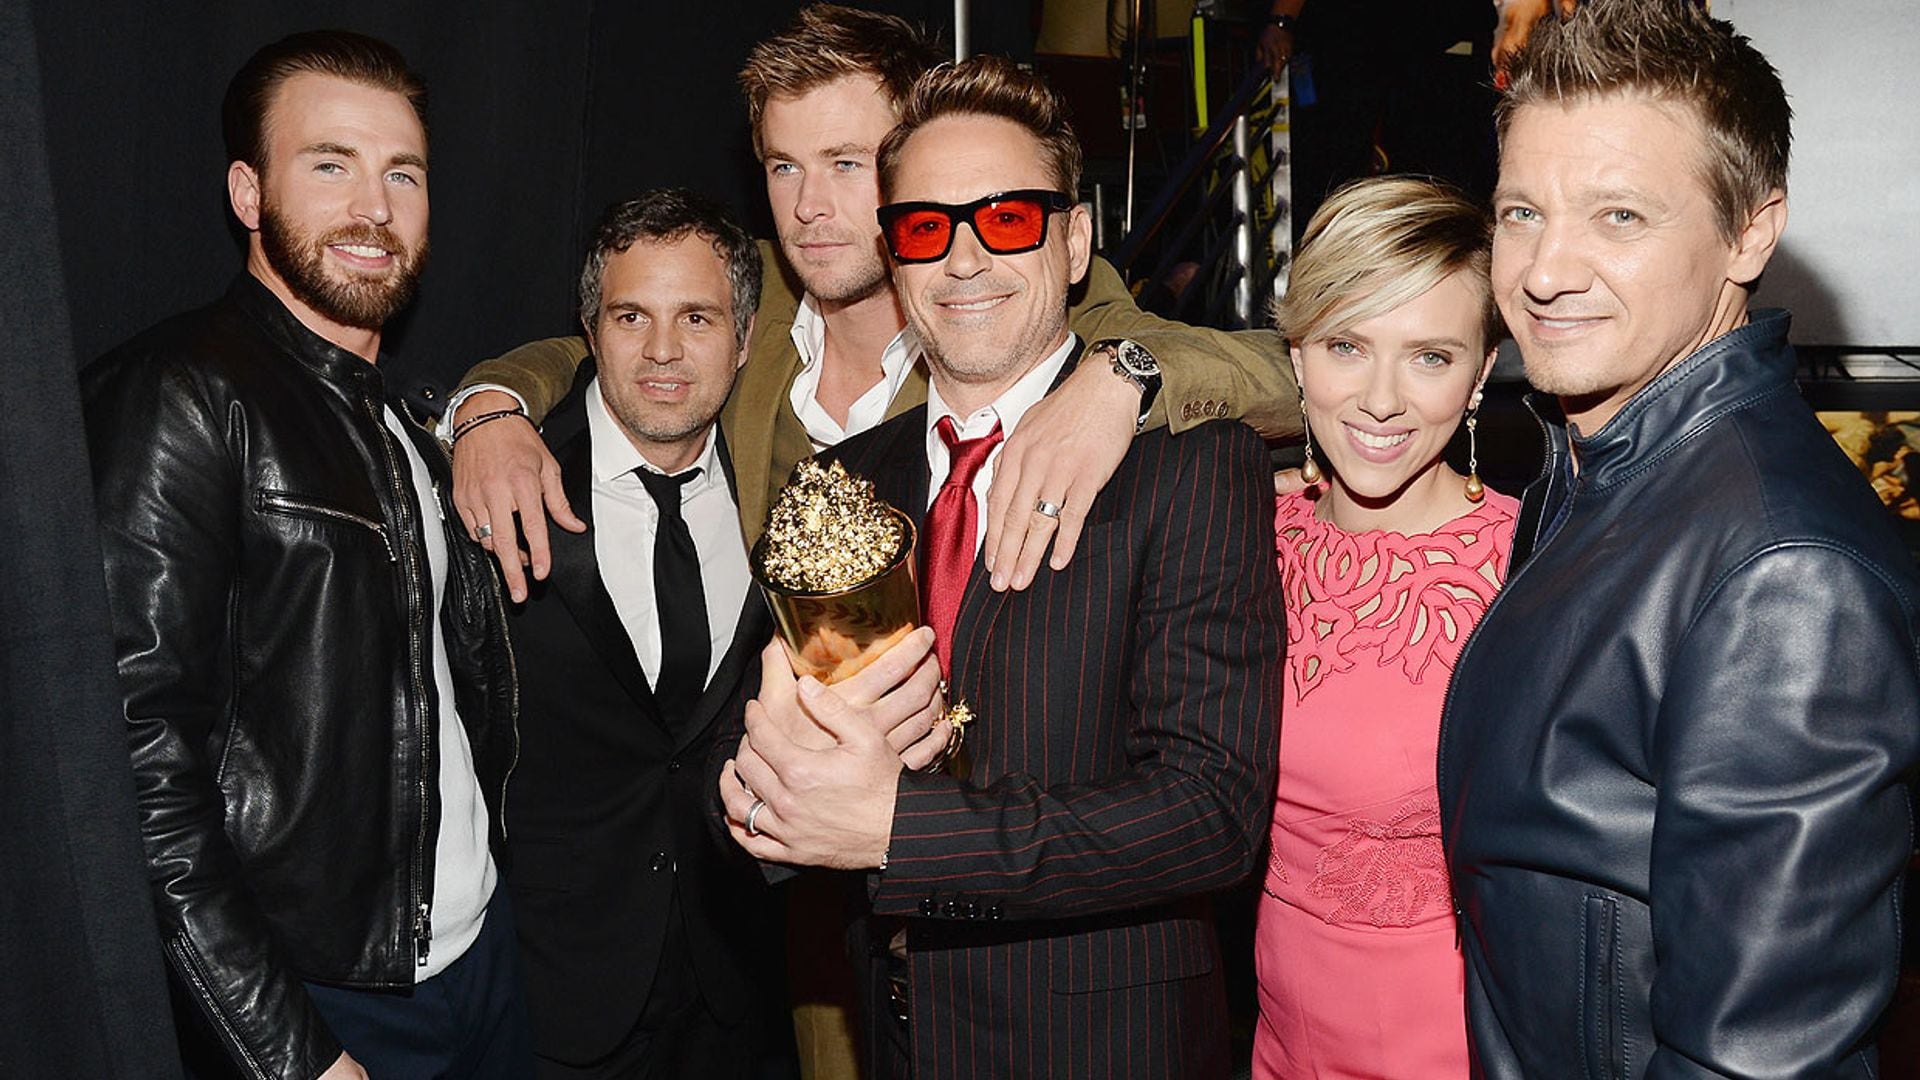 La boda sorpresa de Chris Evans ('Capitán América') rodeado de sus amigos superhéroes